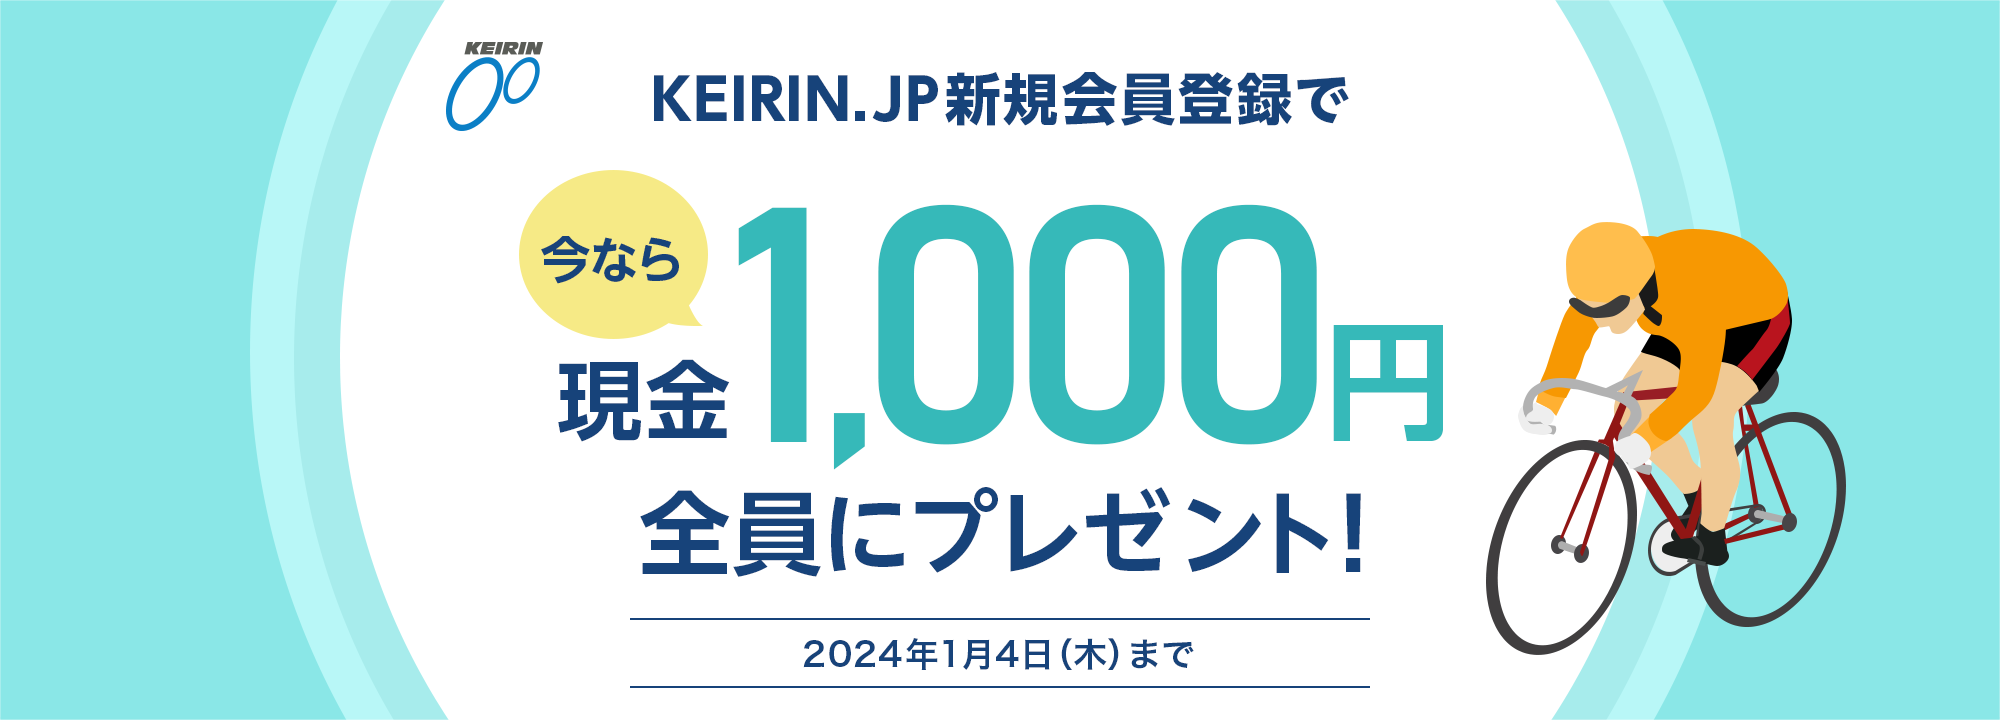 KEIRIN.JP VKo^ōȂ猻1,000~SɃv[gI 2024N14i؁j܂